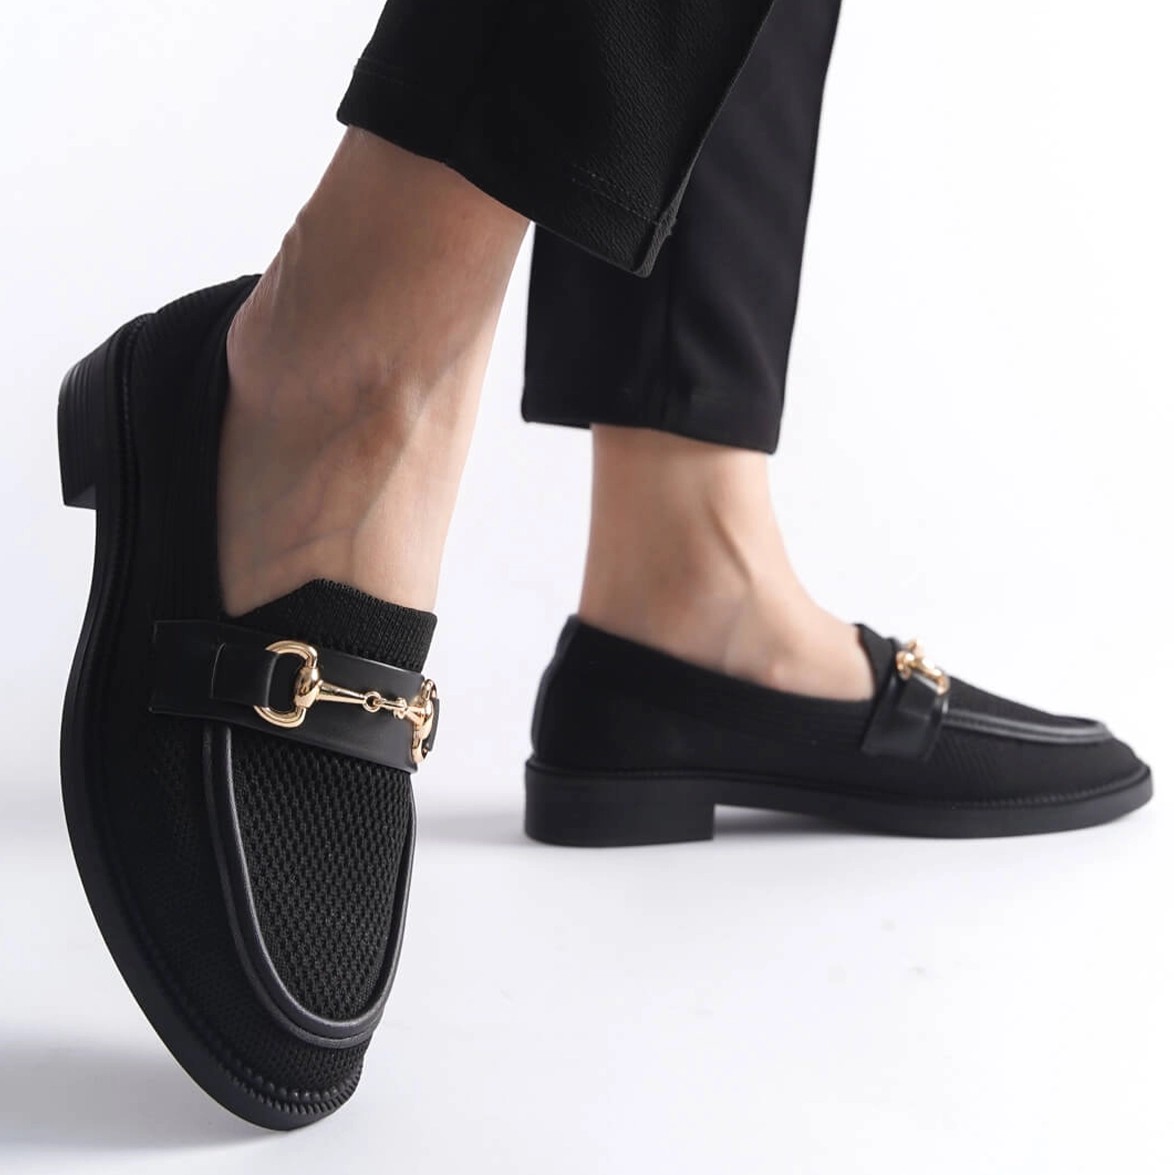 Tekstil Tokalı Loafer Günlük Ayakkabı - Siyah